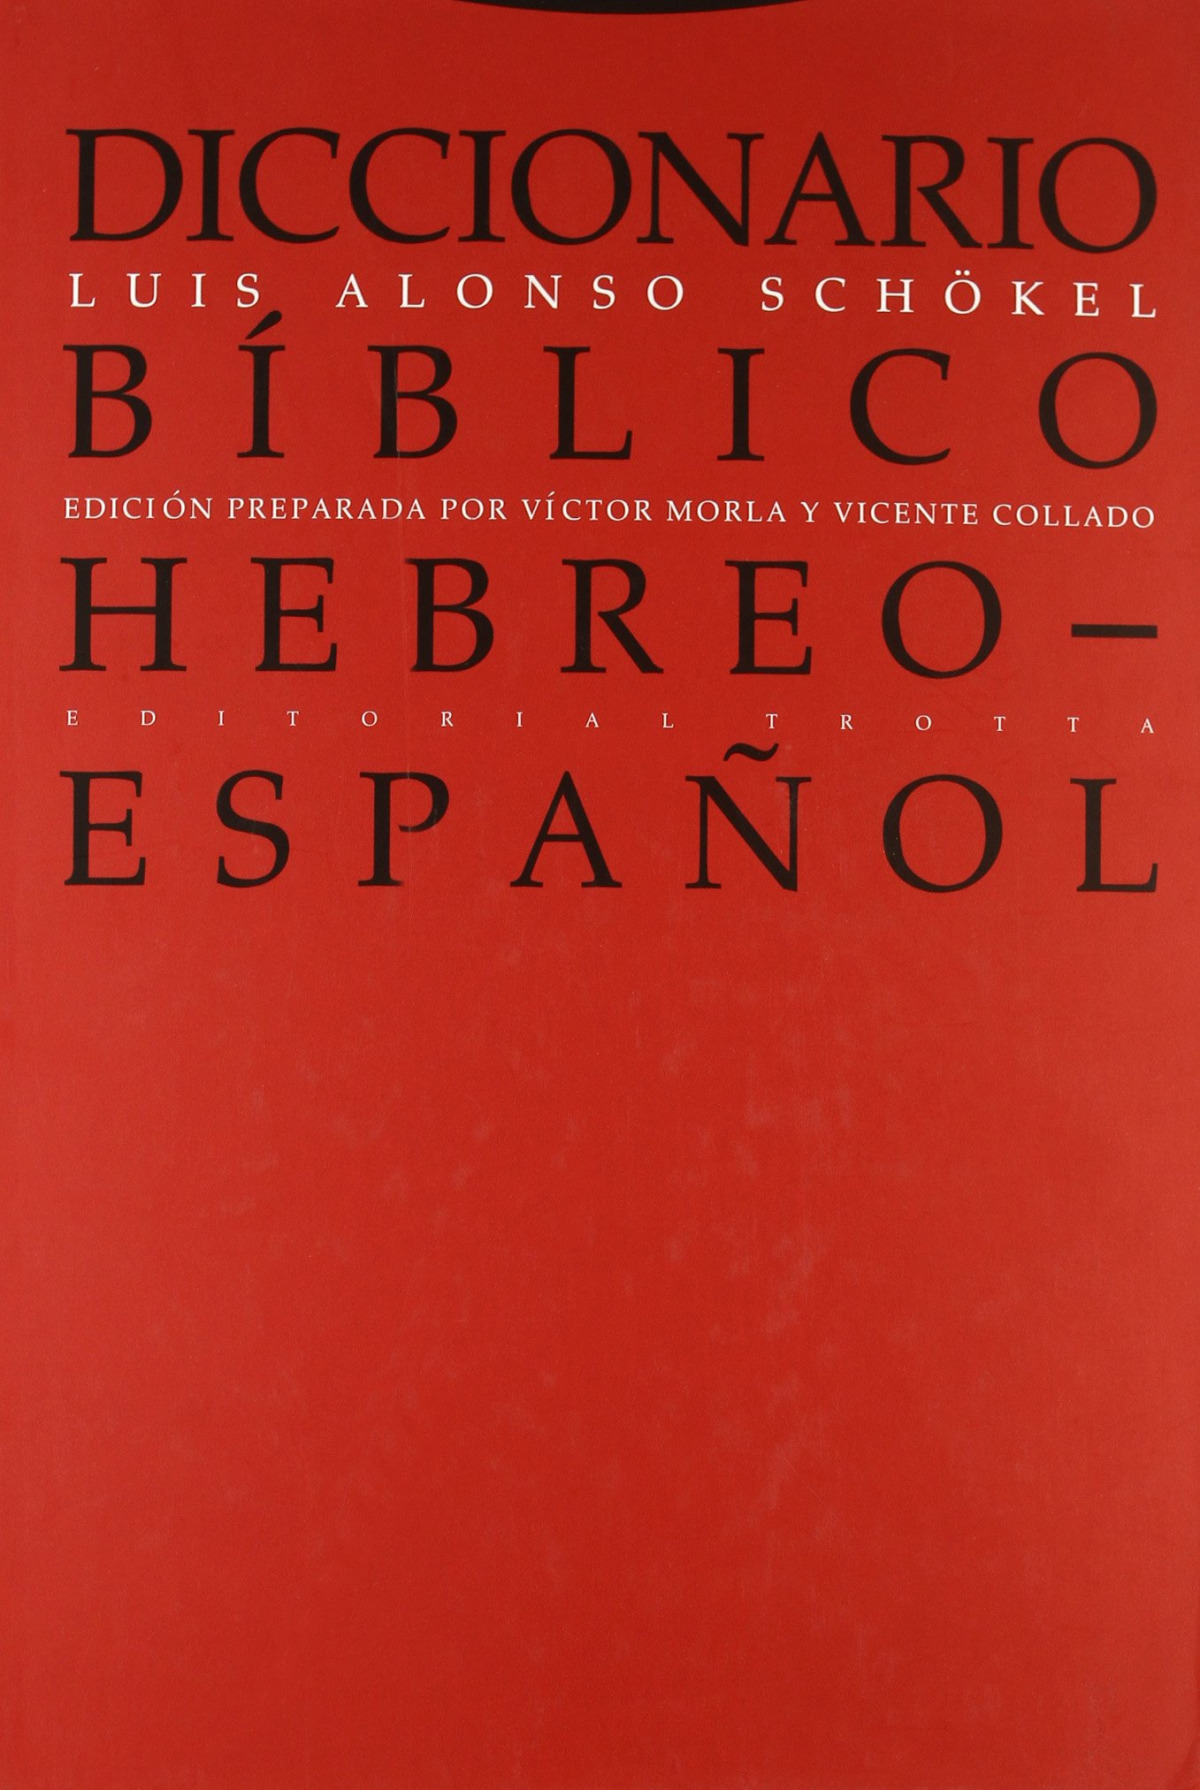 Diccionario biblico hebreo-espaÑol - Schokel, Luis Alonso